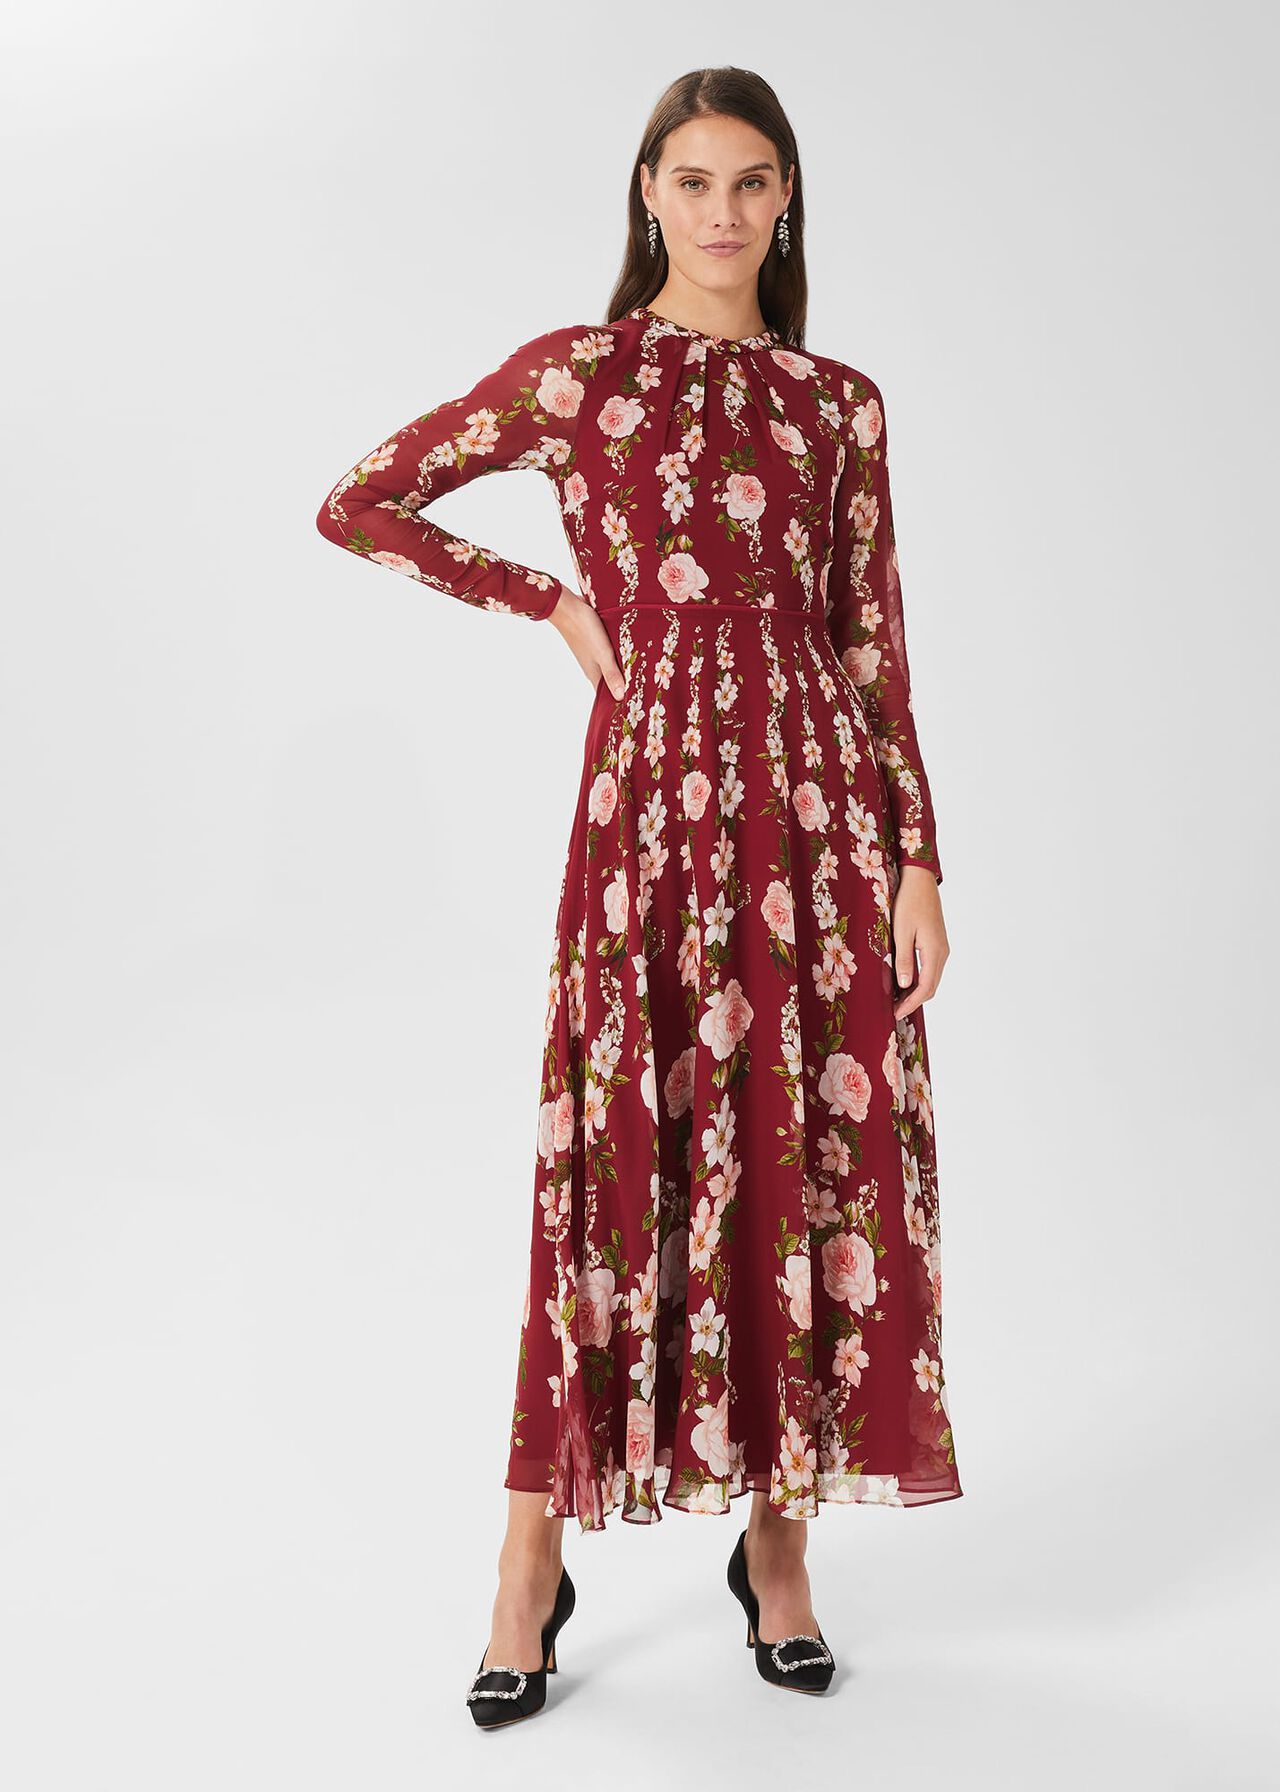 Rosabelle Silk Floral Dress, Burgundy Multi, hi-res